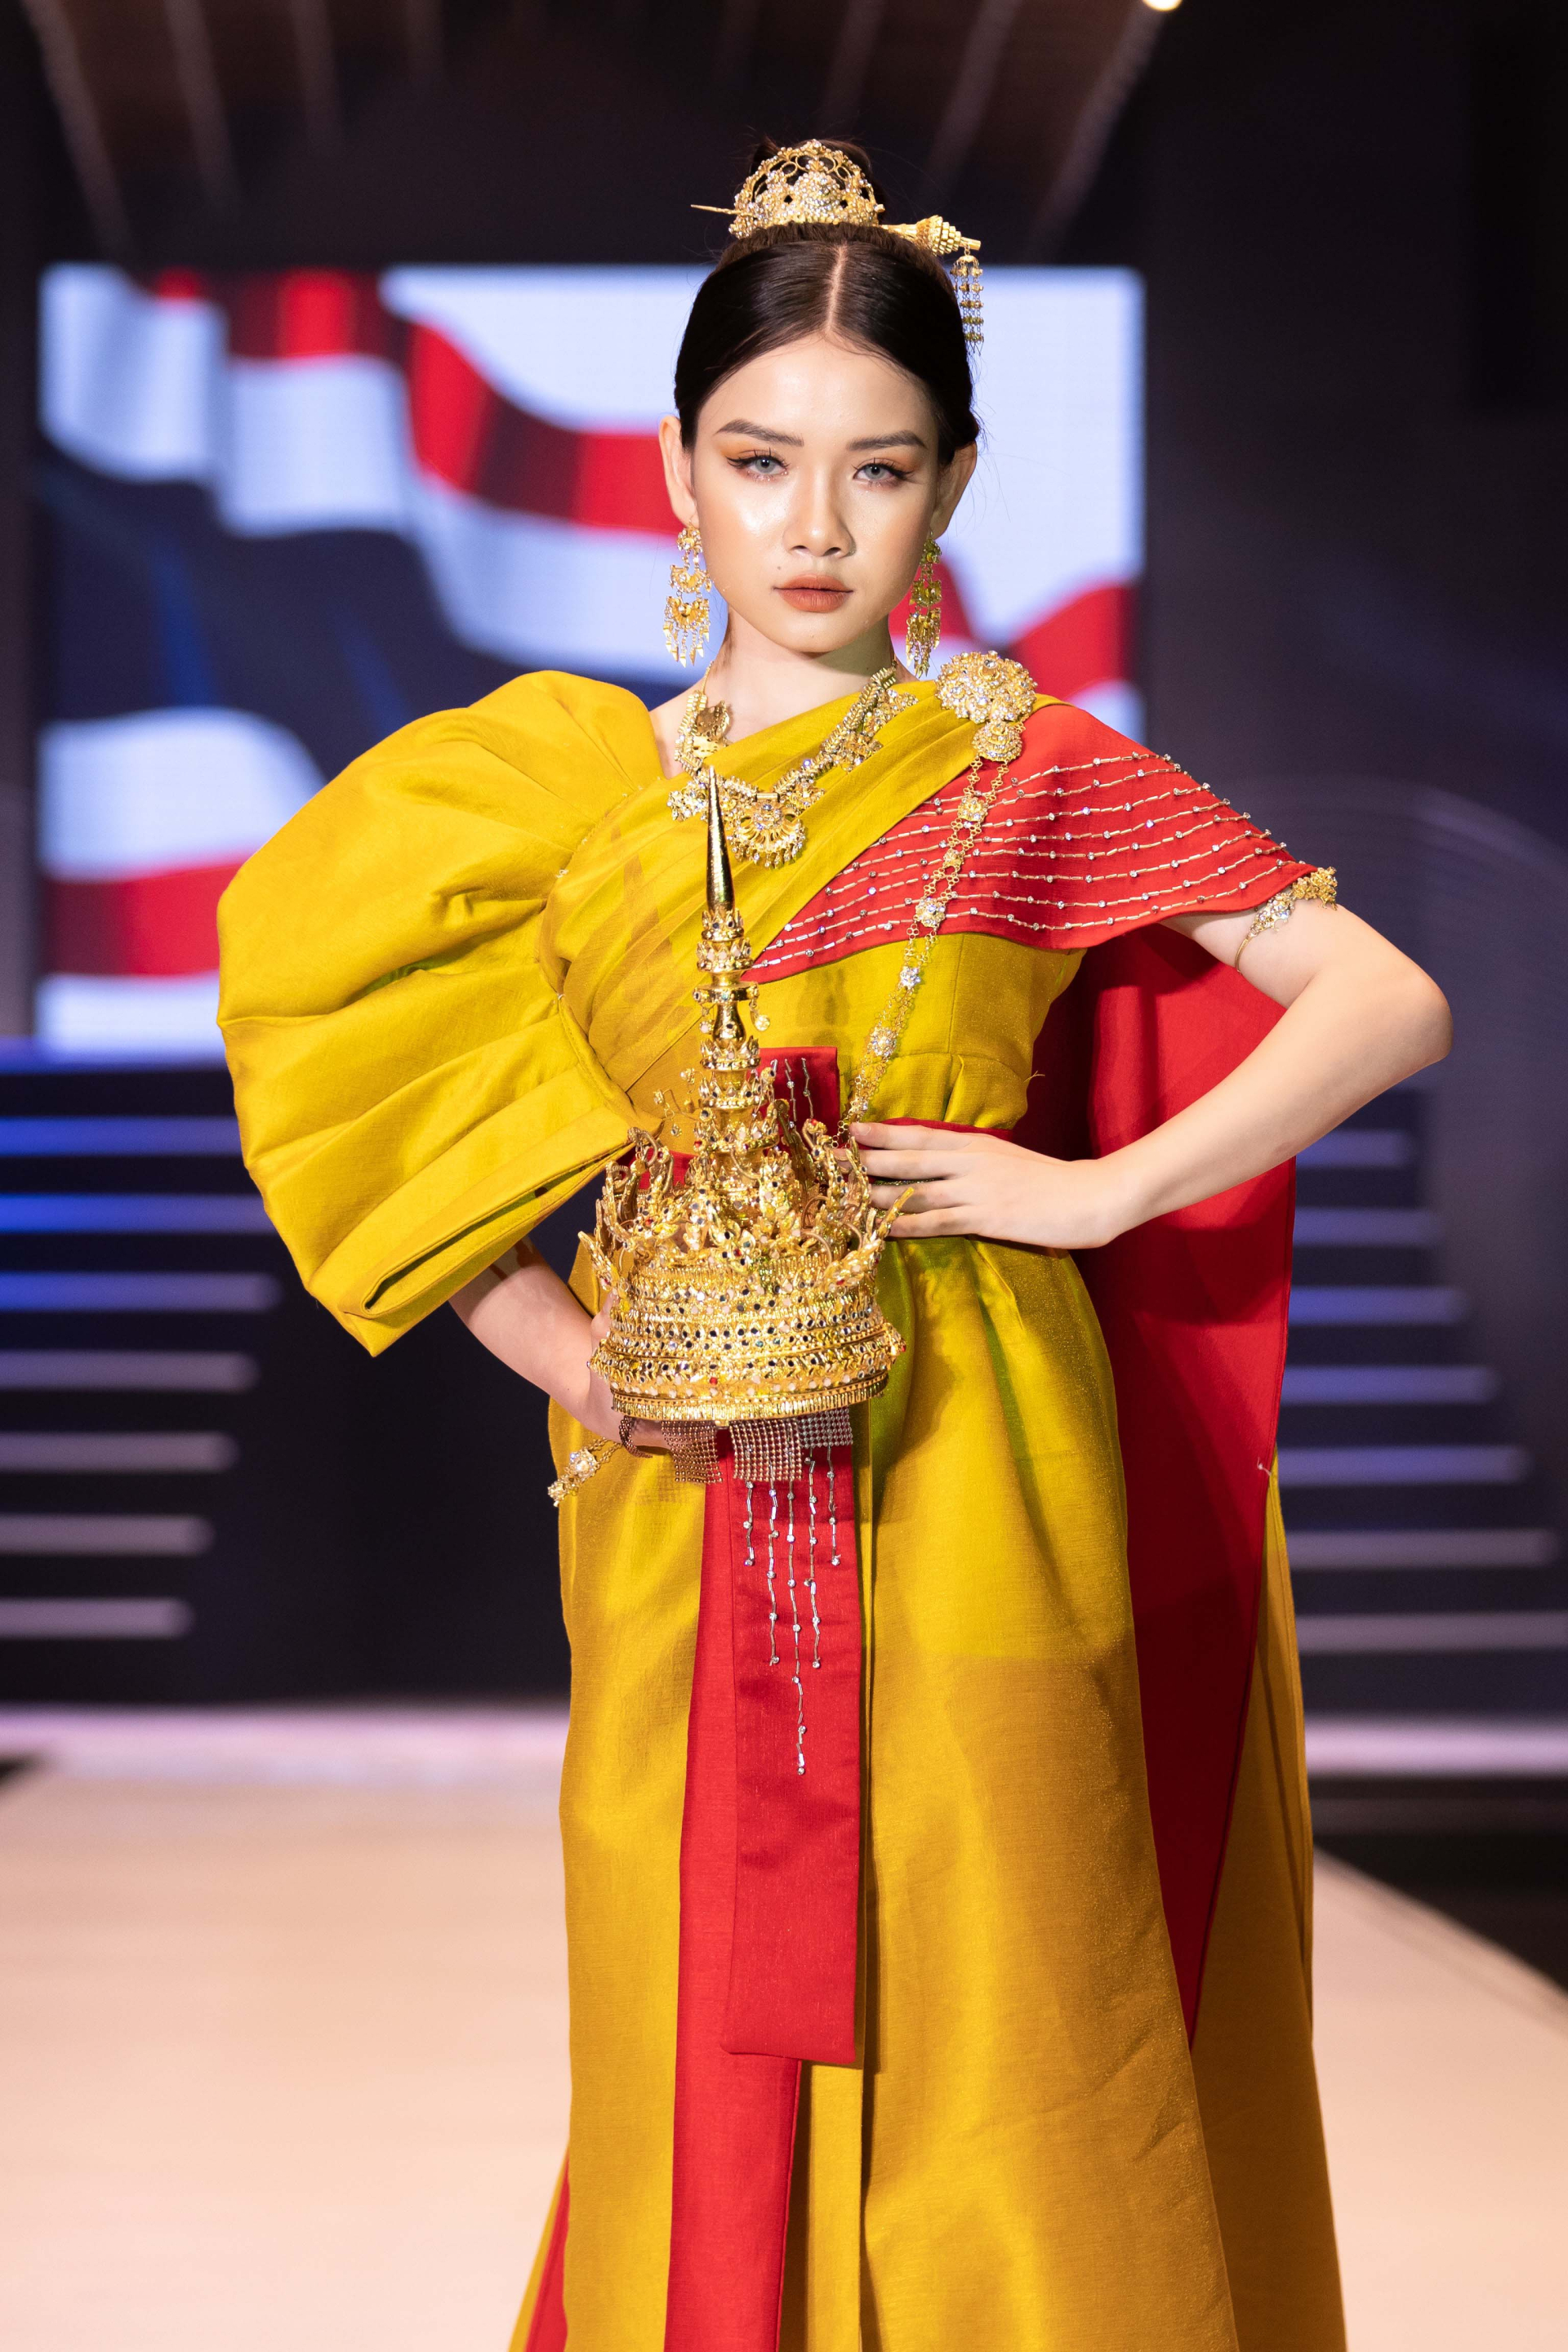 Mẫu nhí mở màn ấn tượng tại Đại hội Siêu mẫu nhí cùng trang phục lấy ý tưởng từ xứ sở chùa Vàng-4